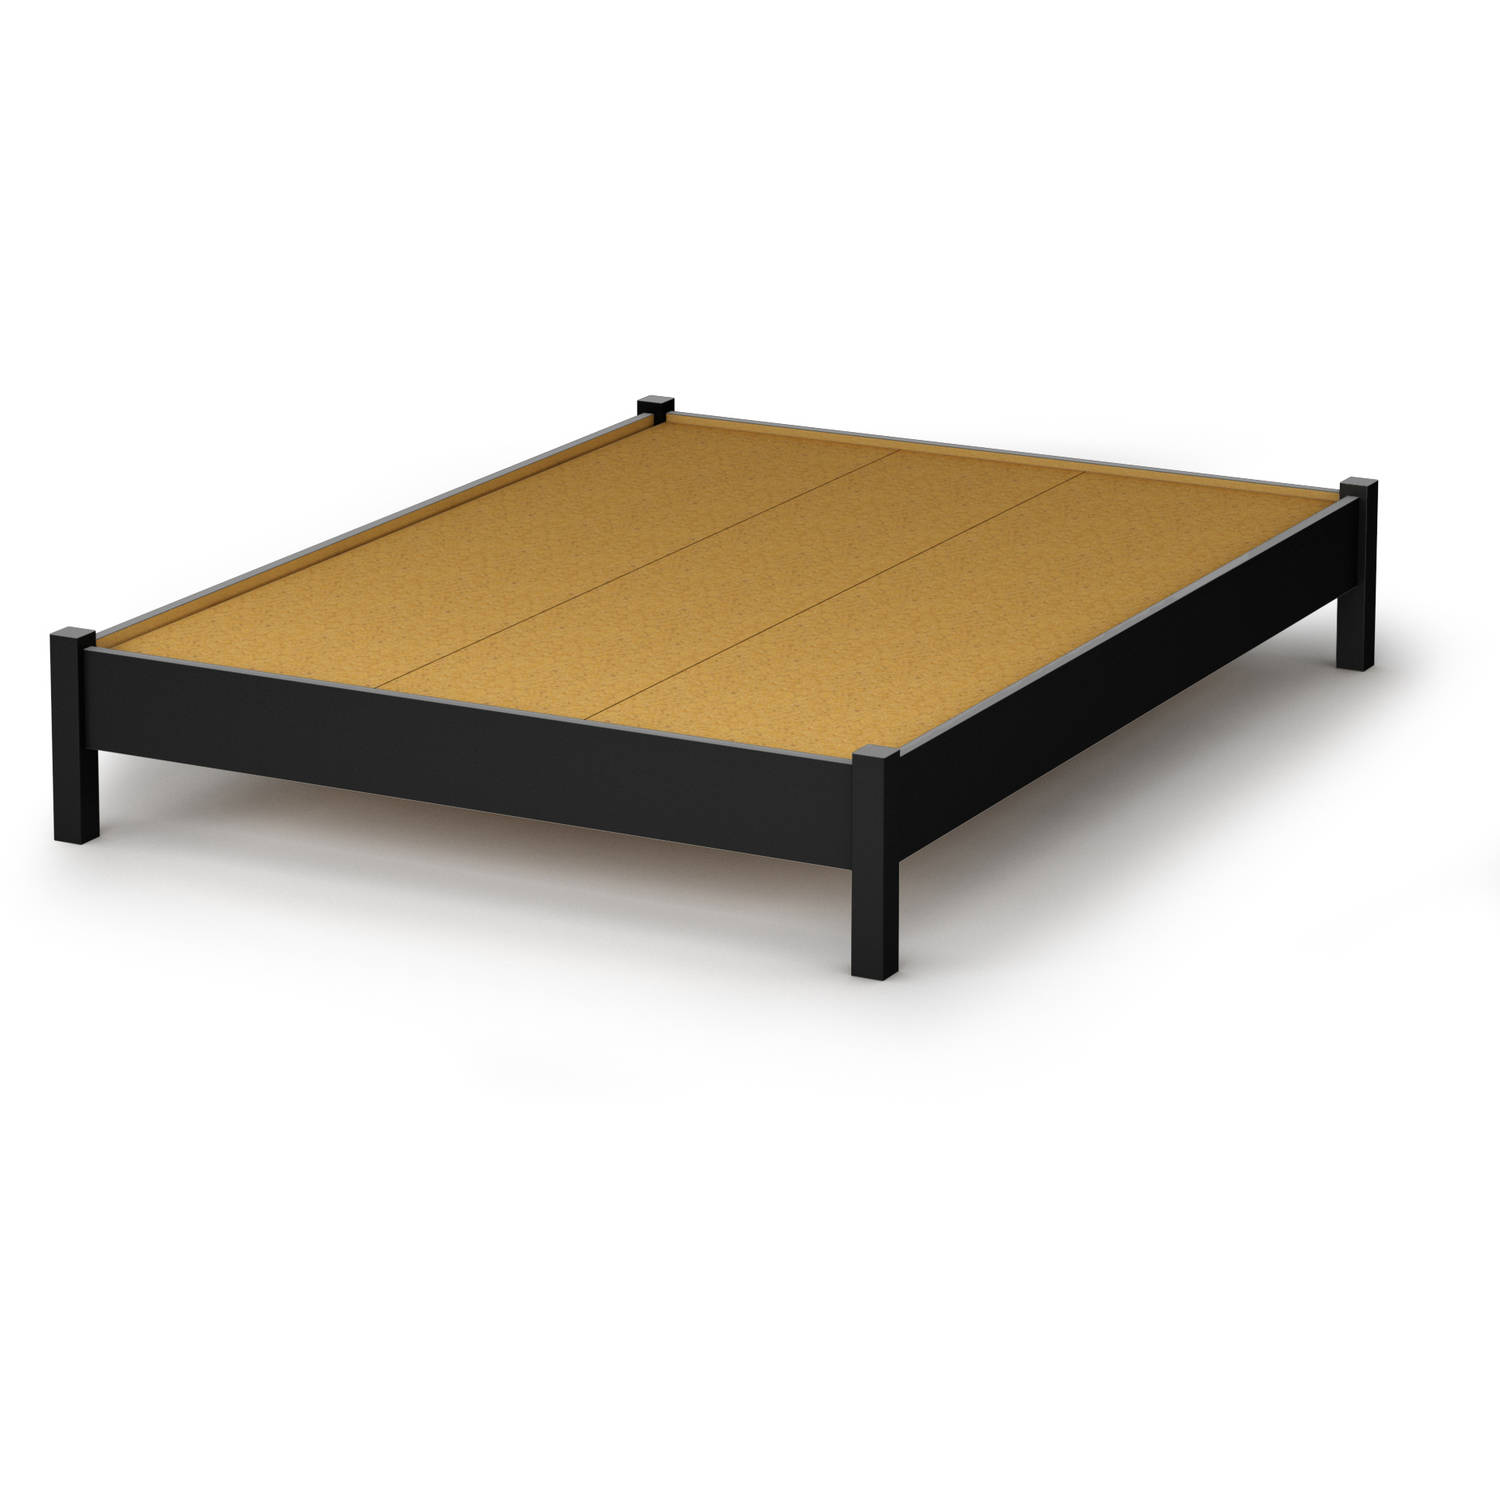 South Shore SoHo 54'' Full Size Platform Bed, Multiple Finishes - image 2 of 5